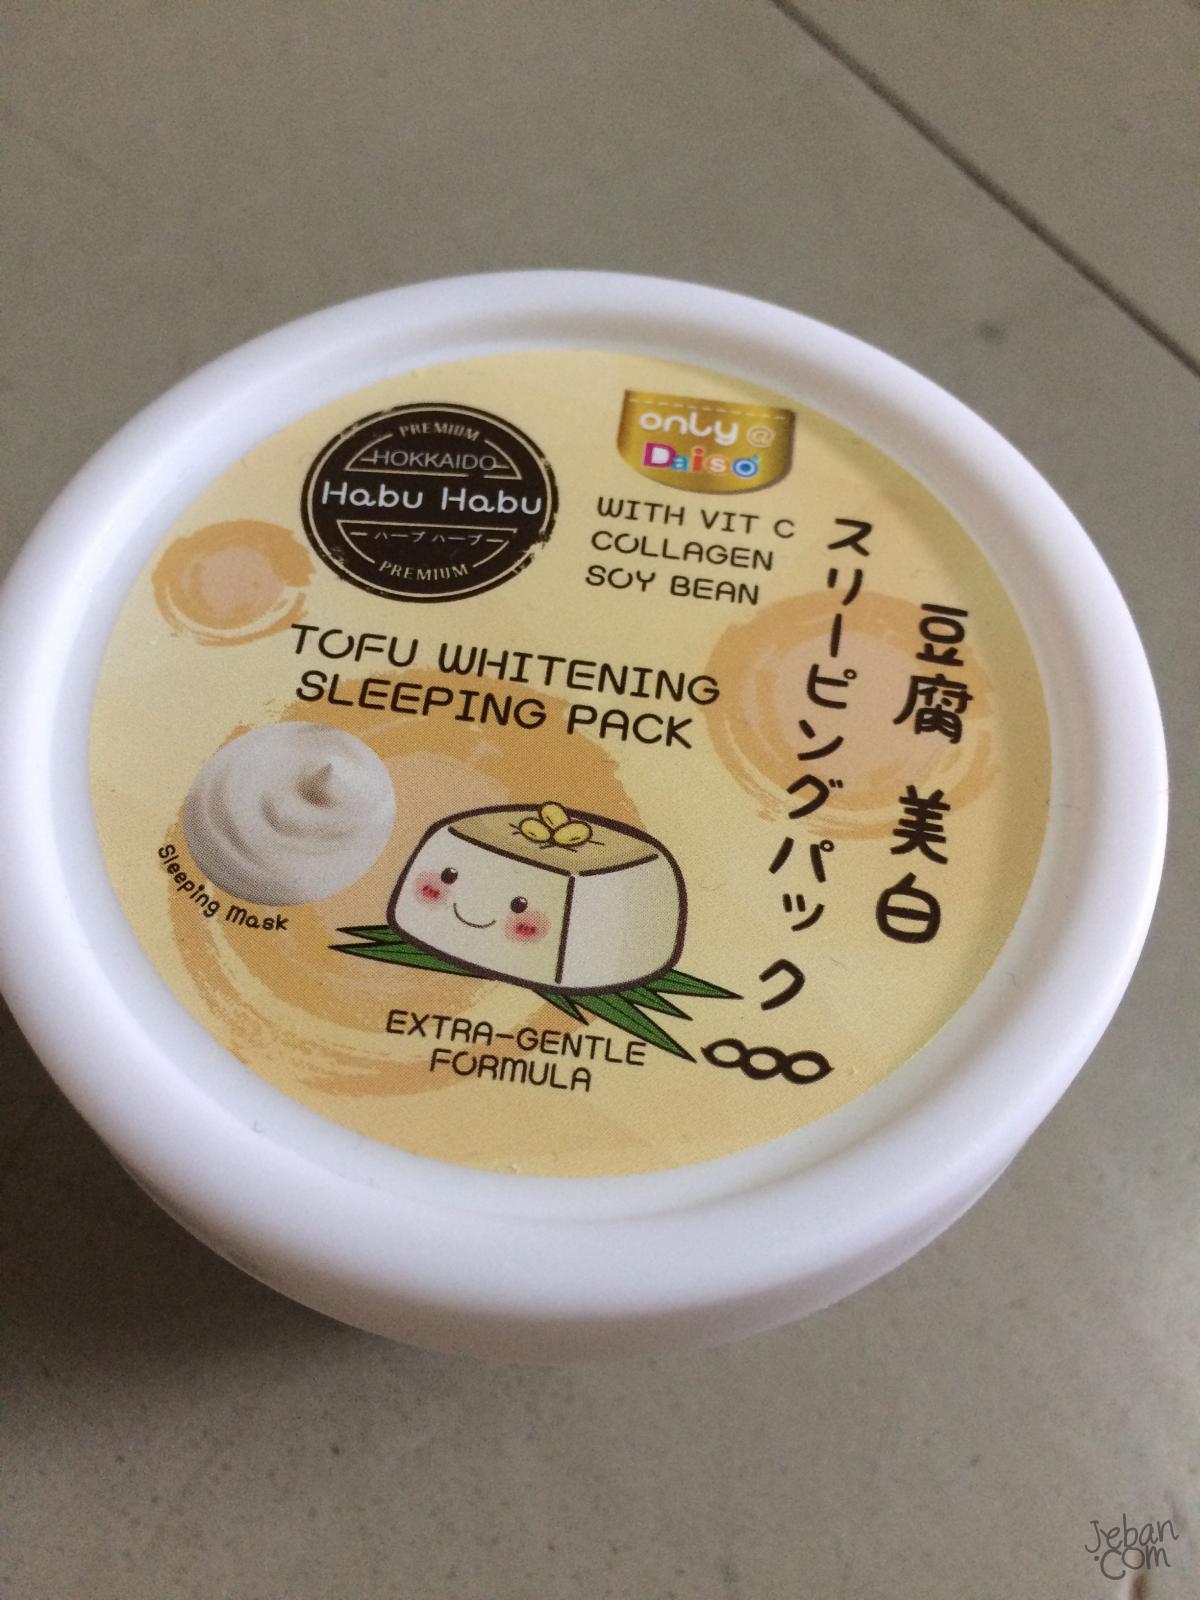 ถูกและดีมีในโลก Tofu whitening sleeping pack by  daiso